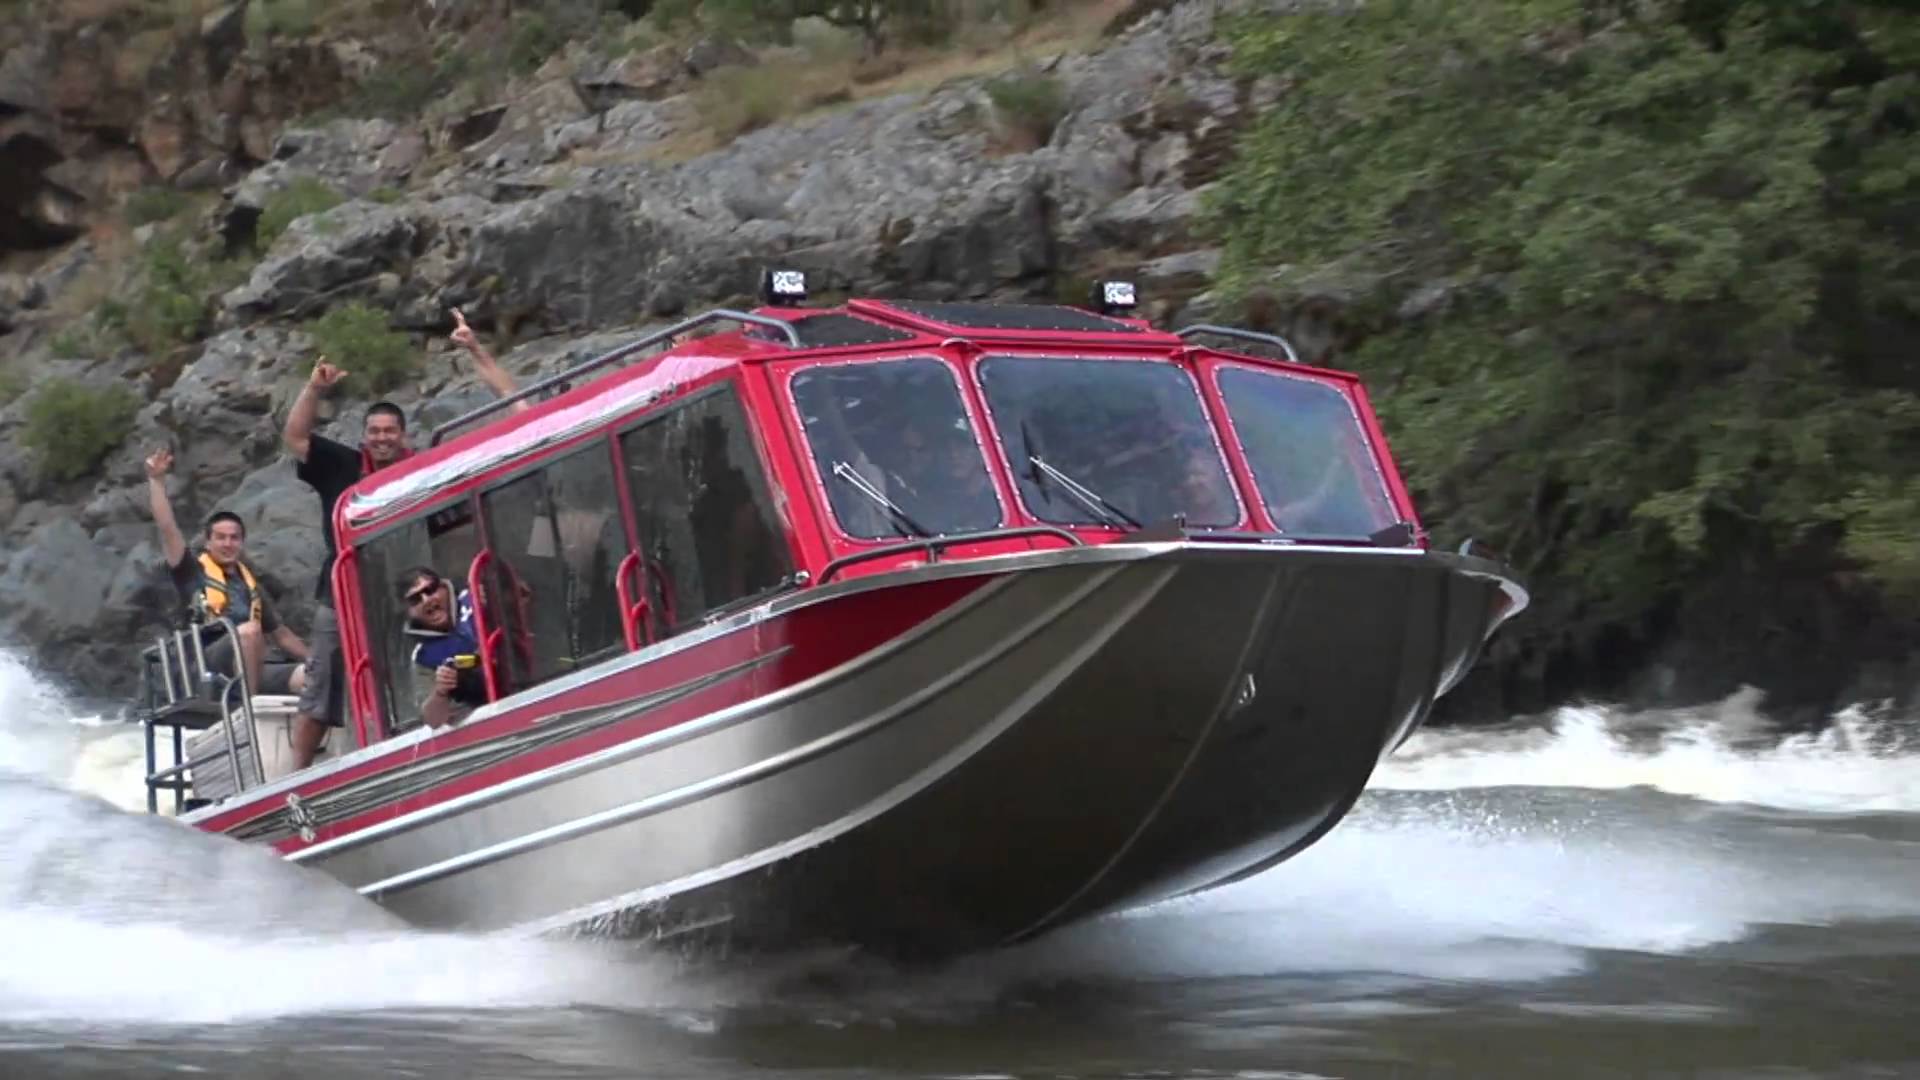 Bohnenkamp's Whitewater Customs BWC Boat running rapids - YouTube